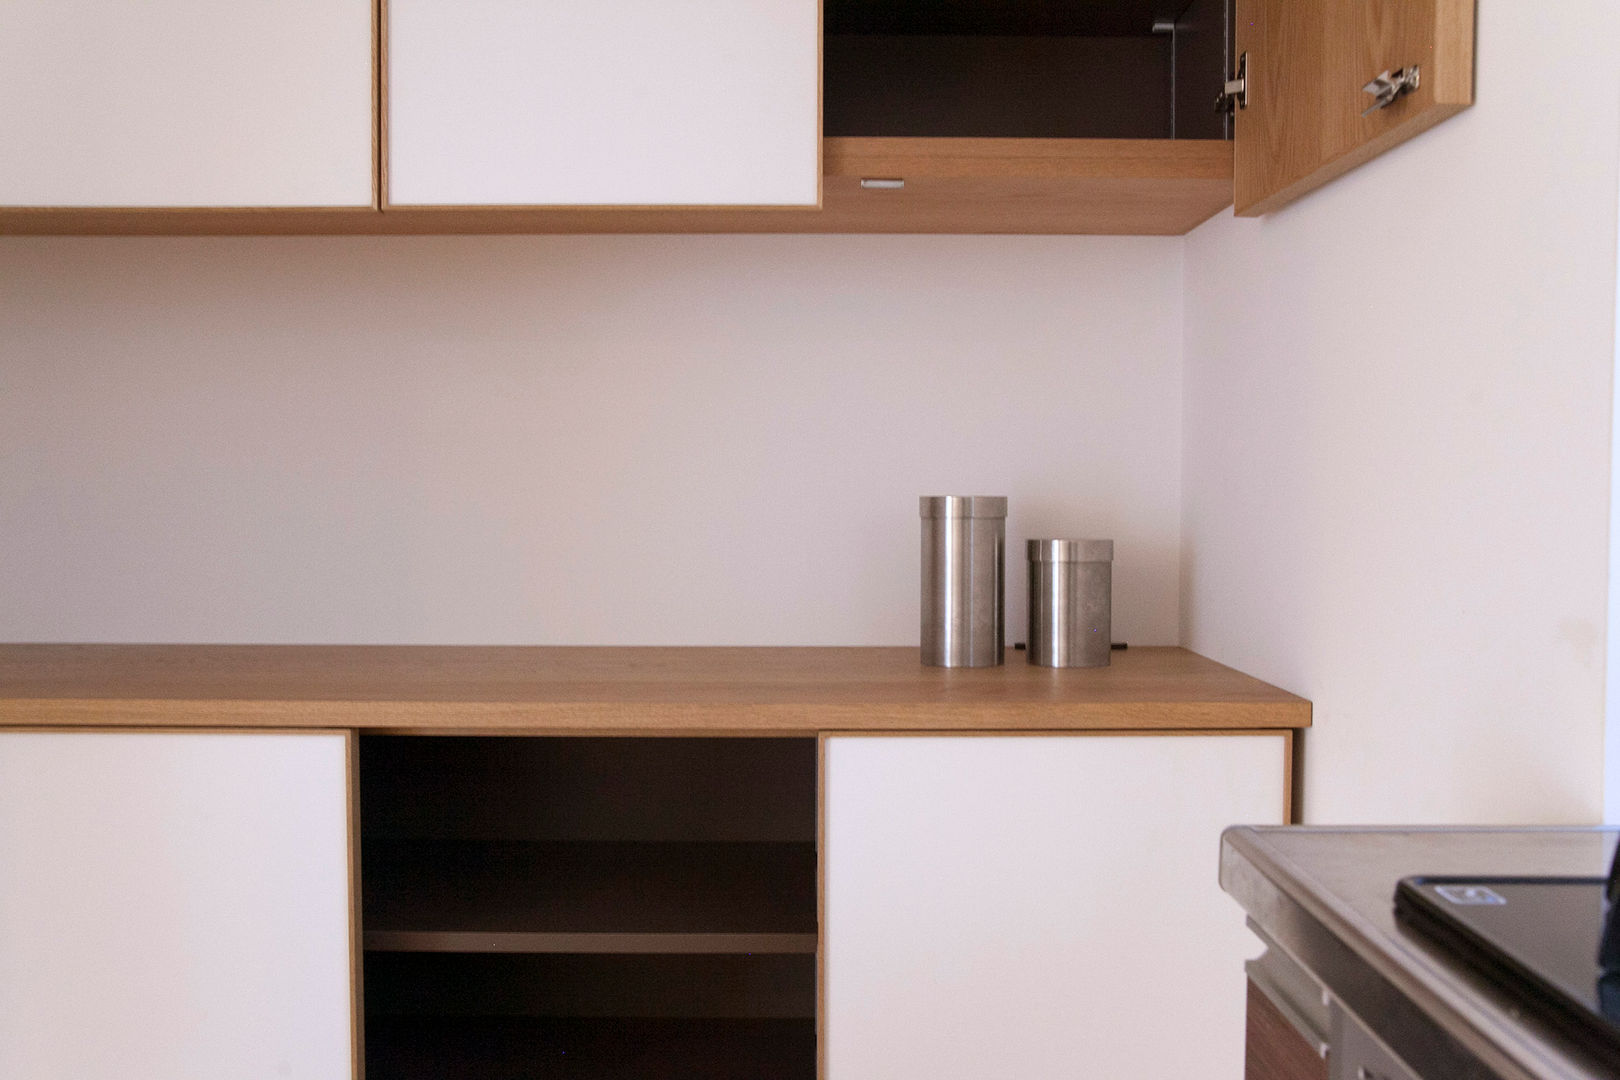 個人宅カップボード, 村松英和デザイン 村松英和デザイン Kitchen Cabinets & shelves